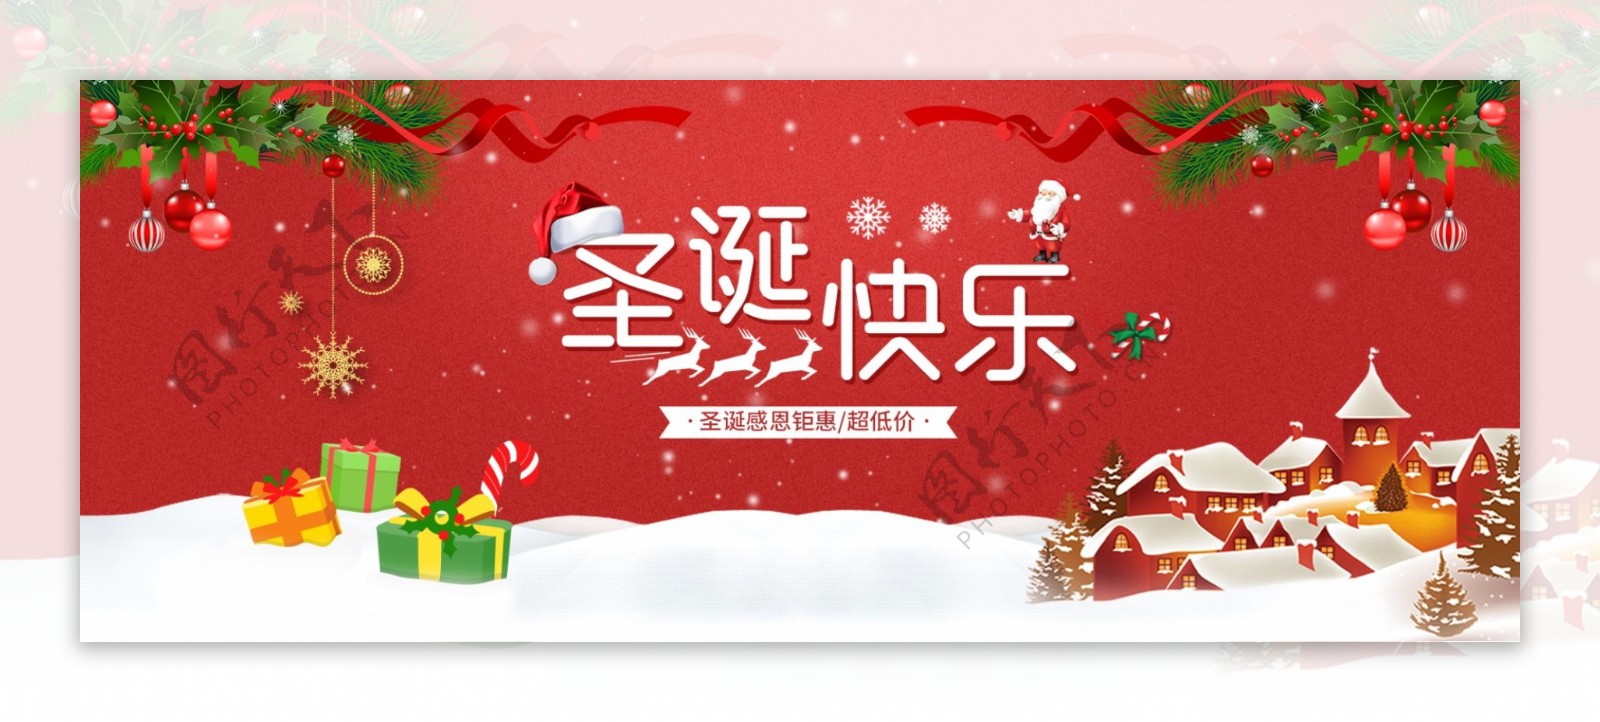 圣诞促销活动banner